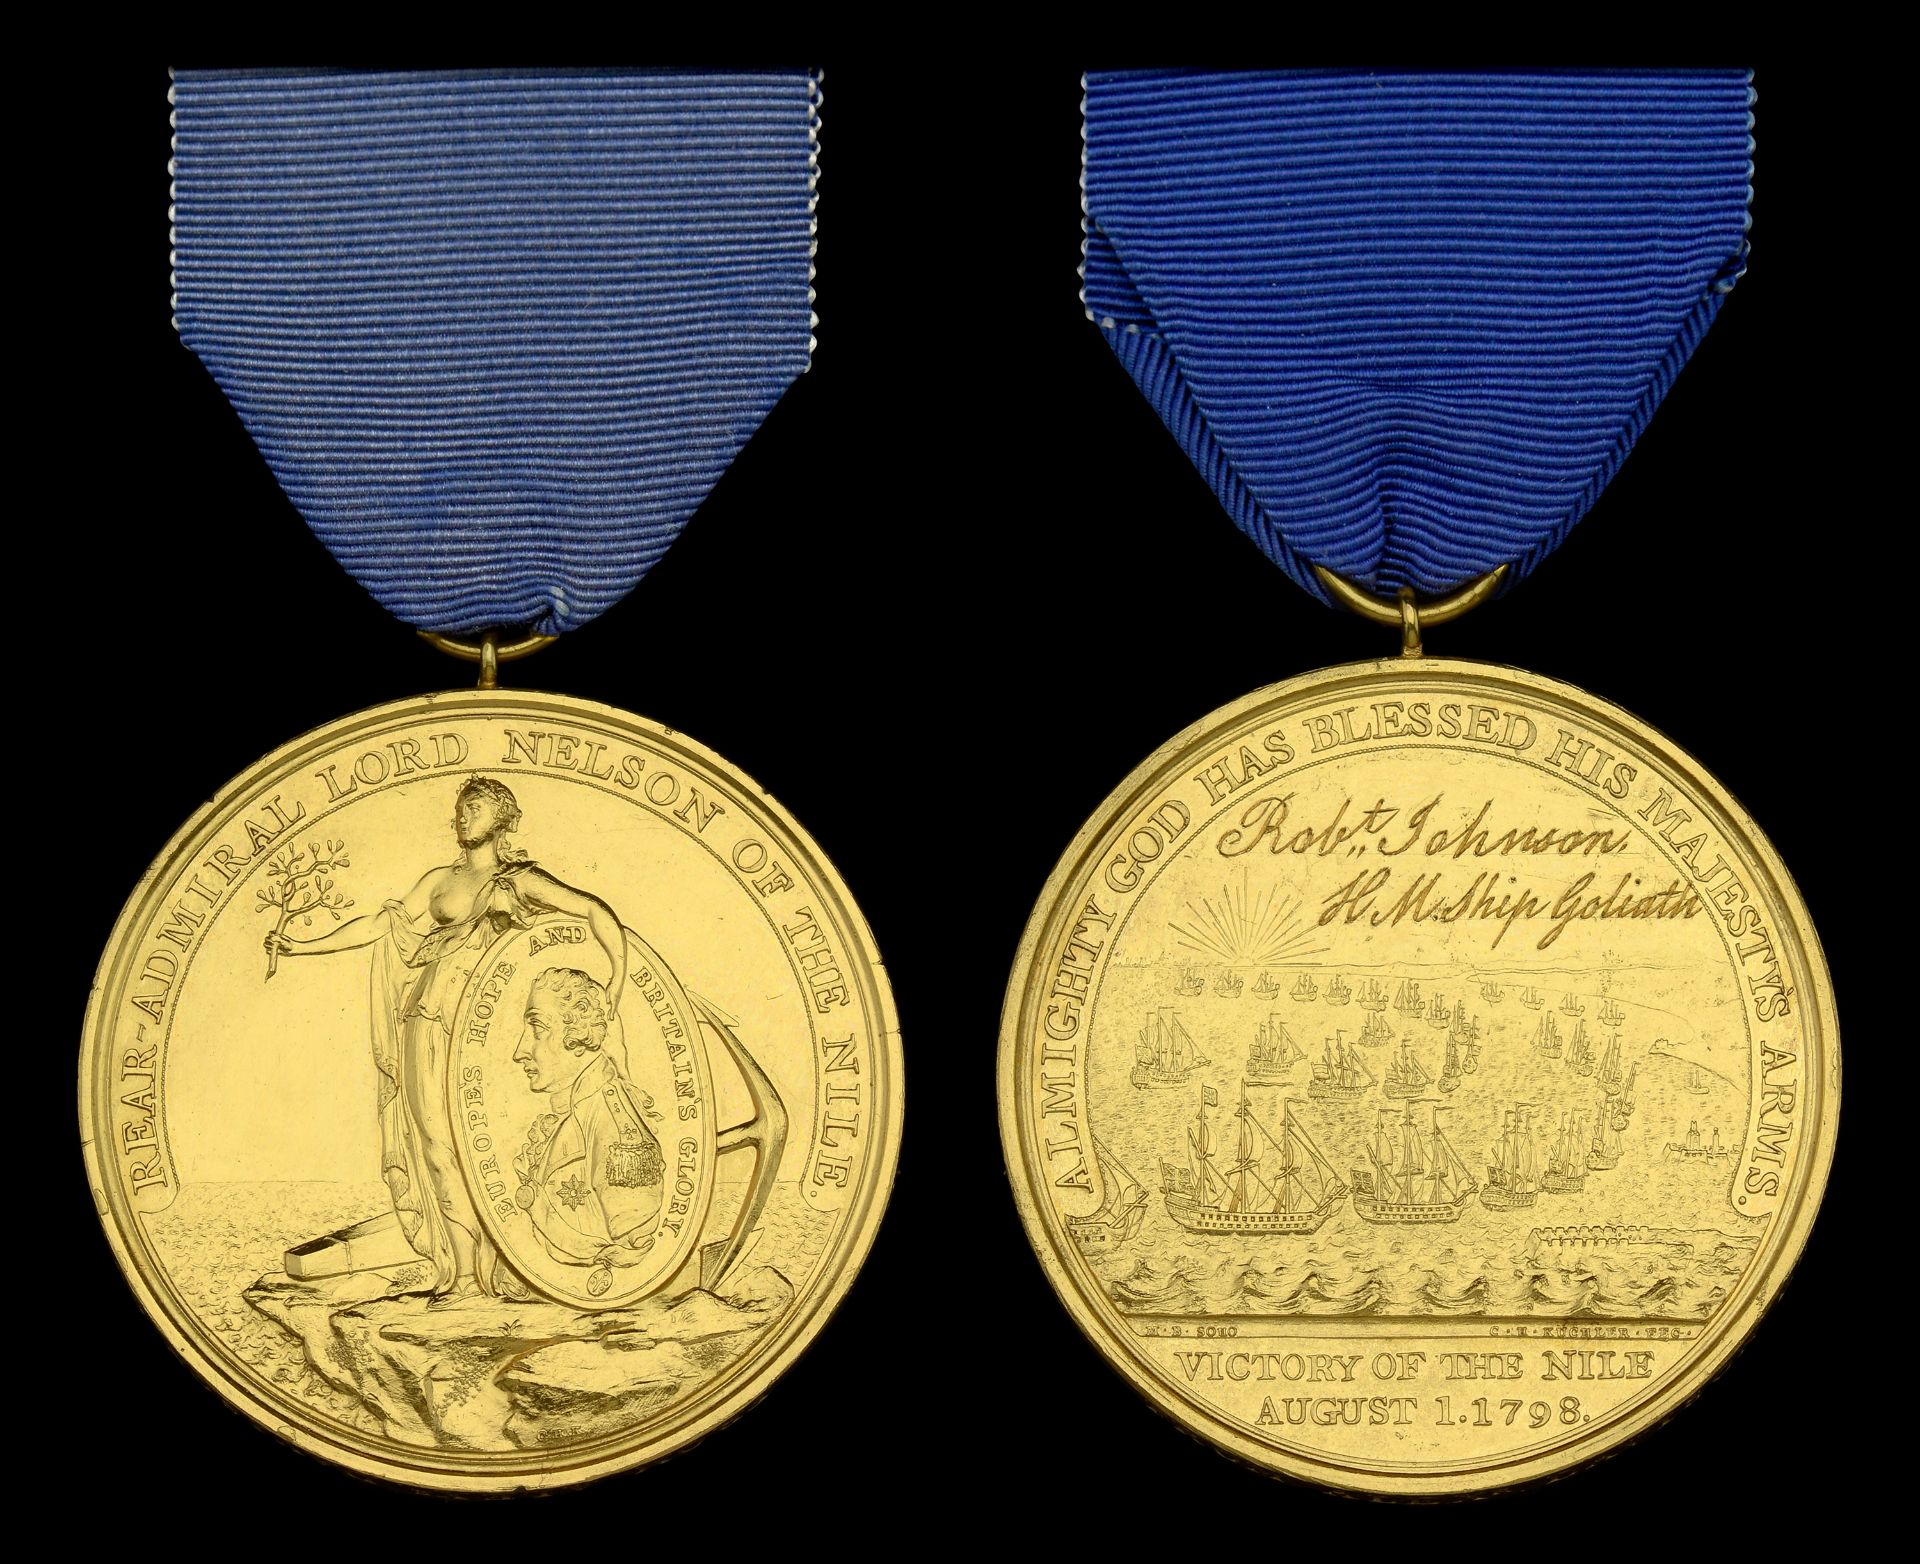 Alexander Davison's Medal for The Nile 1798, bronze-gilt, named on the reverse in fine runni...